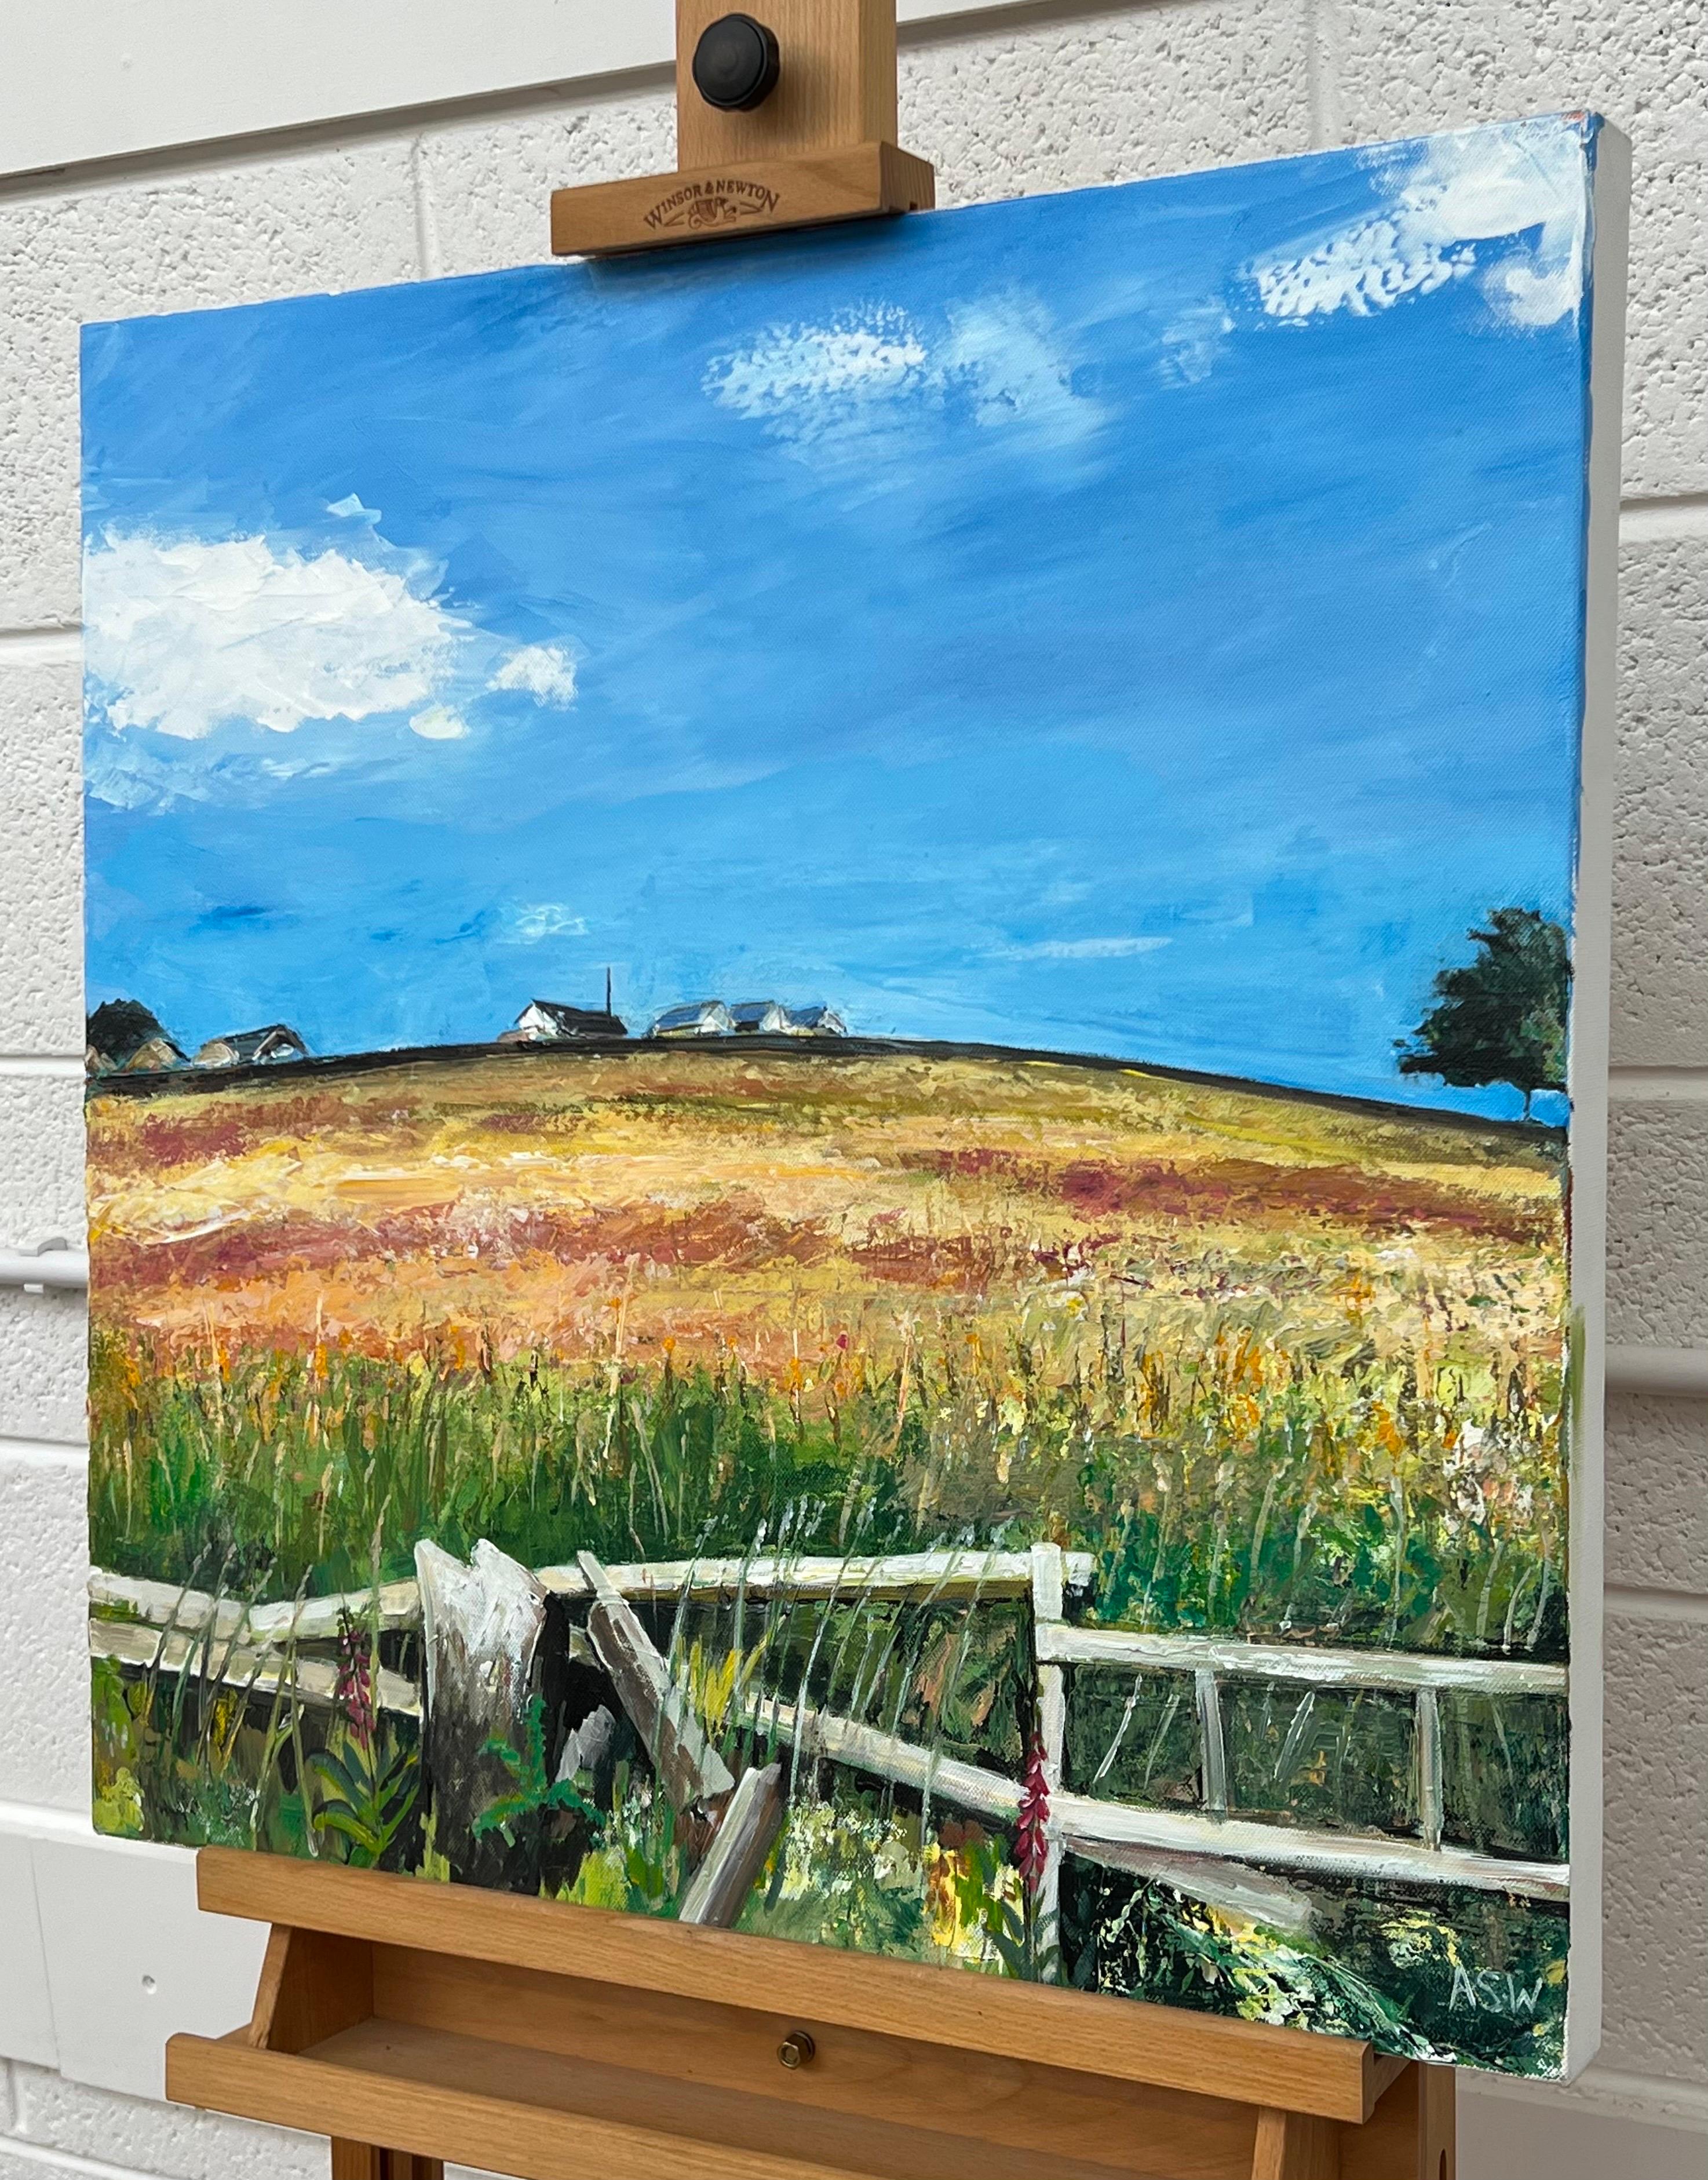 Malerei der Felder von Lancashire in der englischen Landschaft durch die britische Landschaftsmalerin Angela Wakefield. Über eine Trockenmauer, durch das lange Gras, die Wildblumen, über ein Feld in Richtung der landwirtschaftlichen Gebäude und